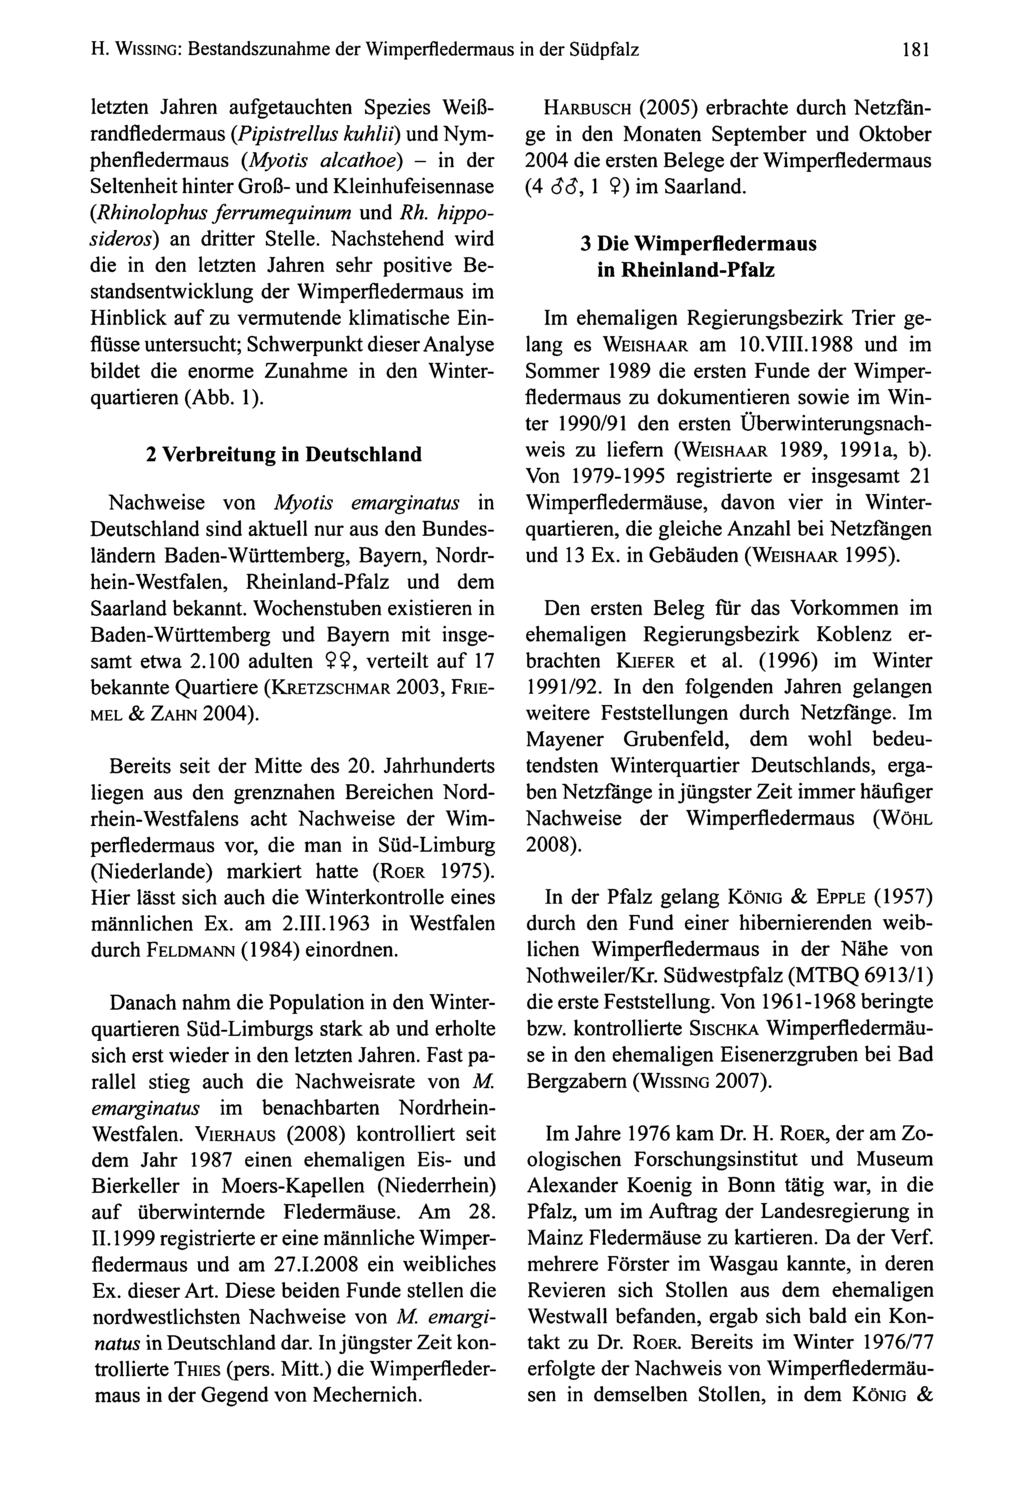 H. Wissing: Bestandszunahme der Wimperfledermaus in der Südpfalz 181 letzten en aufgetauchten Spezies Weiß randfledermaus {Pipistrellus kuhlii) und Nym phenfledermaus {Myotis alcathoe) - in der